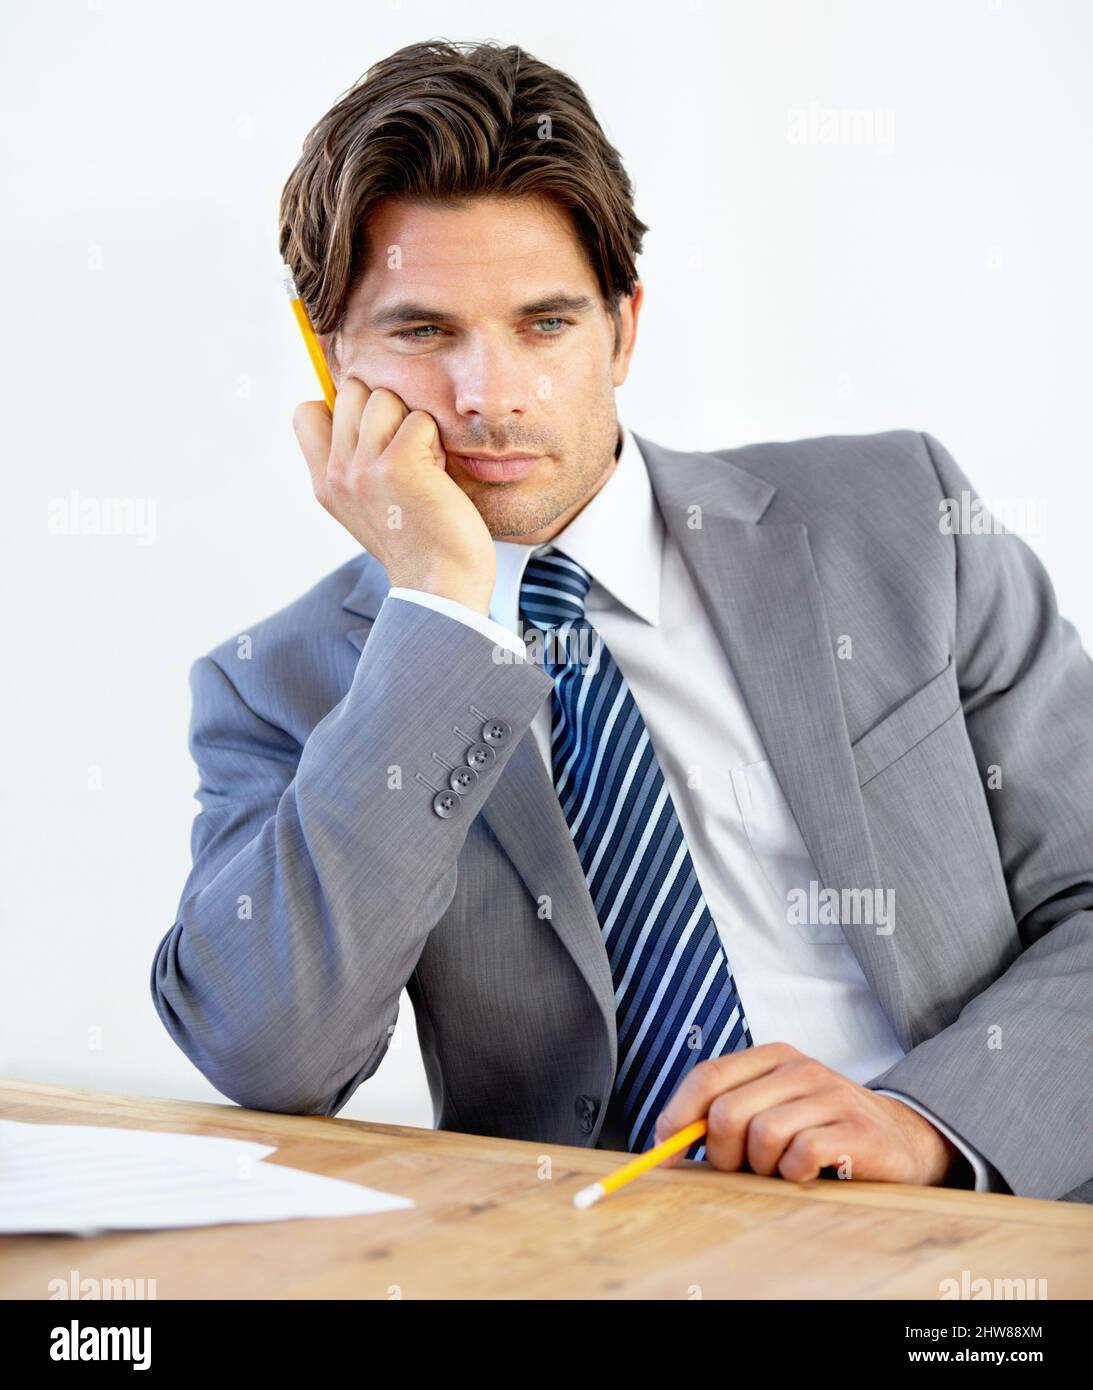 Eine Veränderung in der Karriere erforderlich. Gelangweilter junger Geschäftsmann, der an seinem Schreibtisch sitzt. Stockfoto